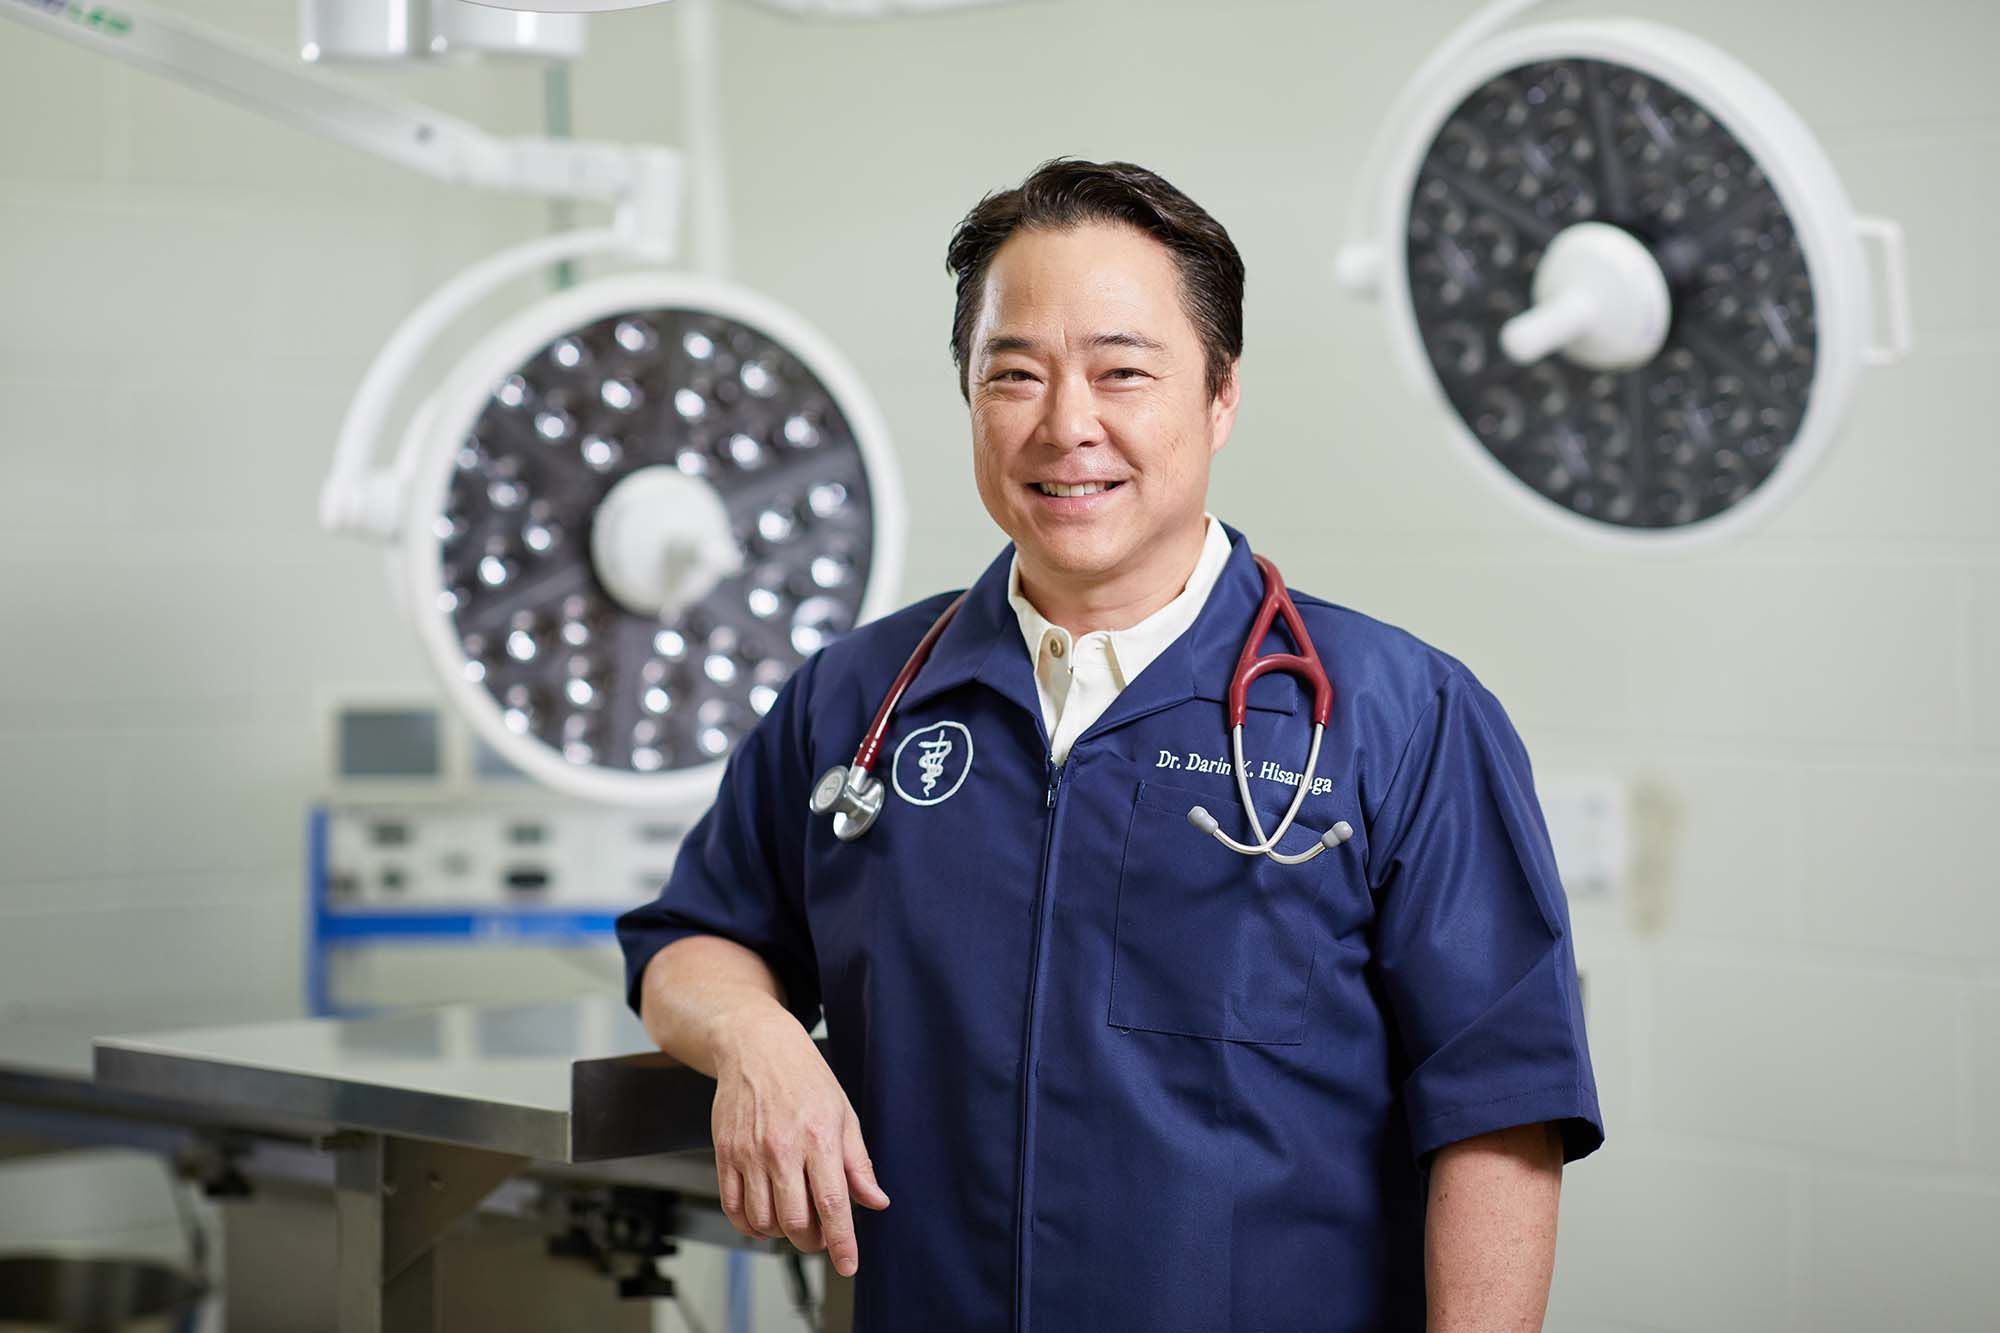 Dr. Darin K. Hisanaga, DVM